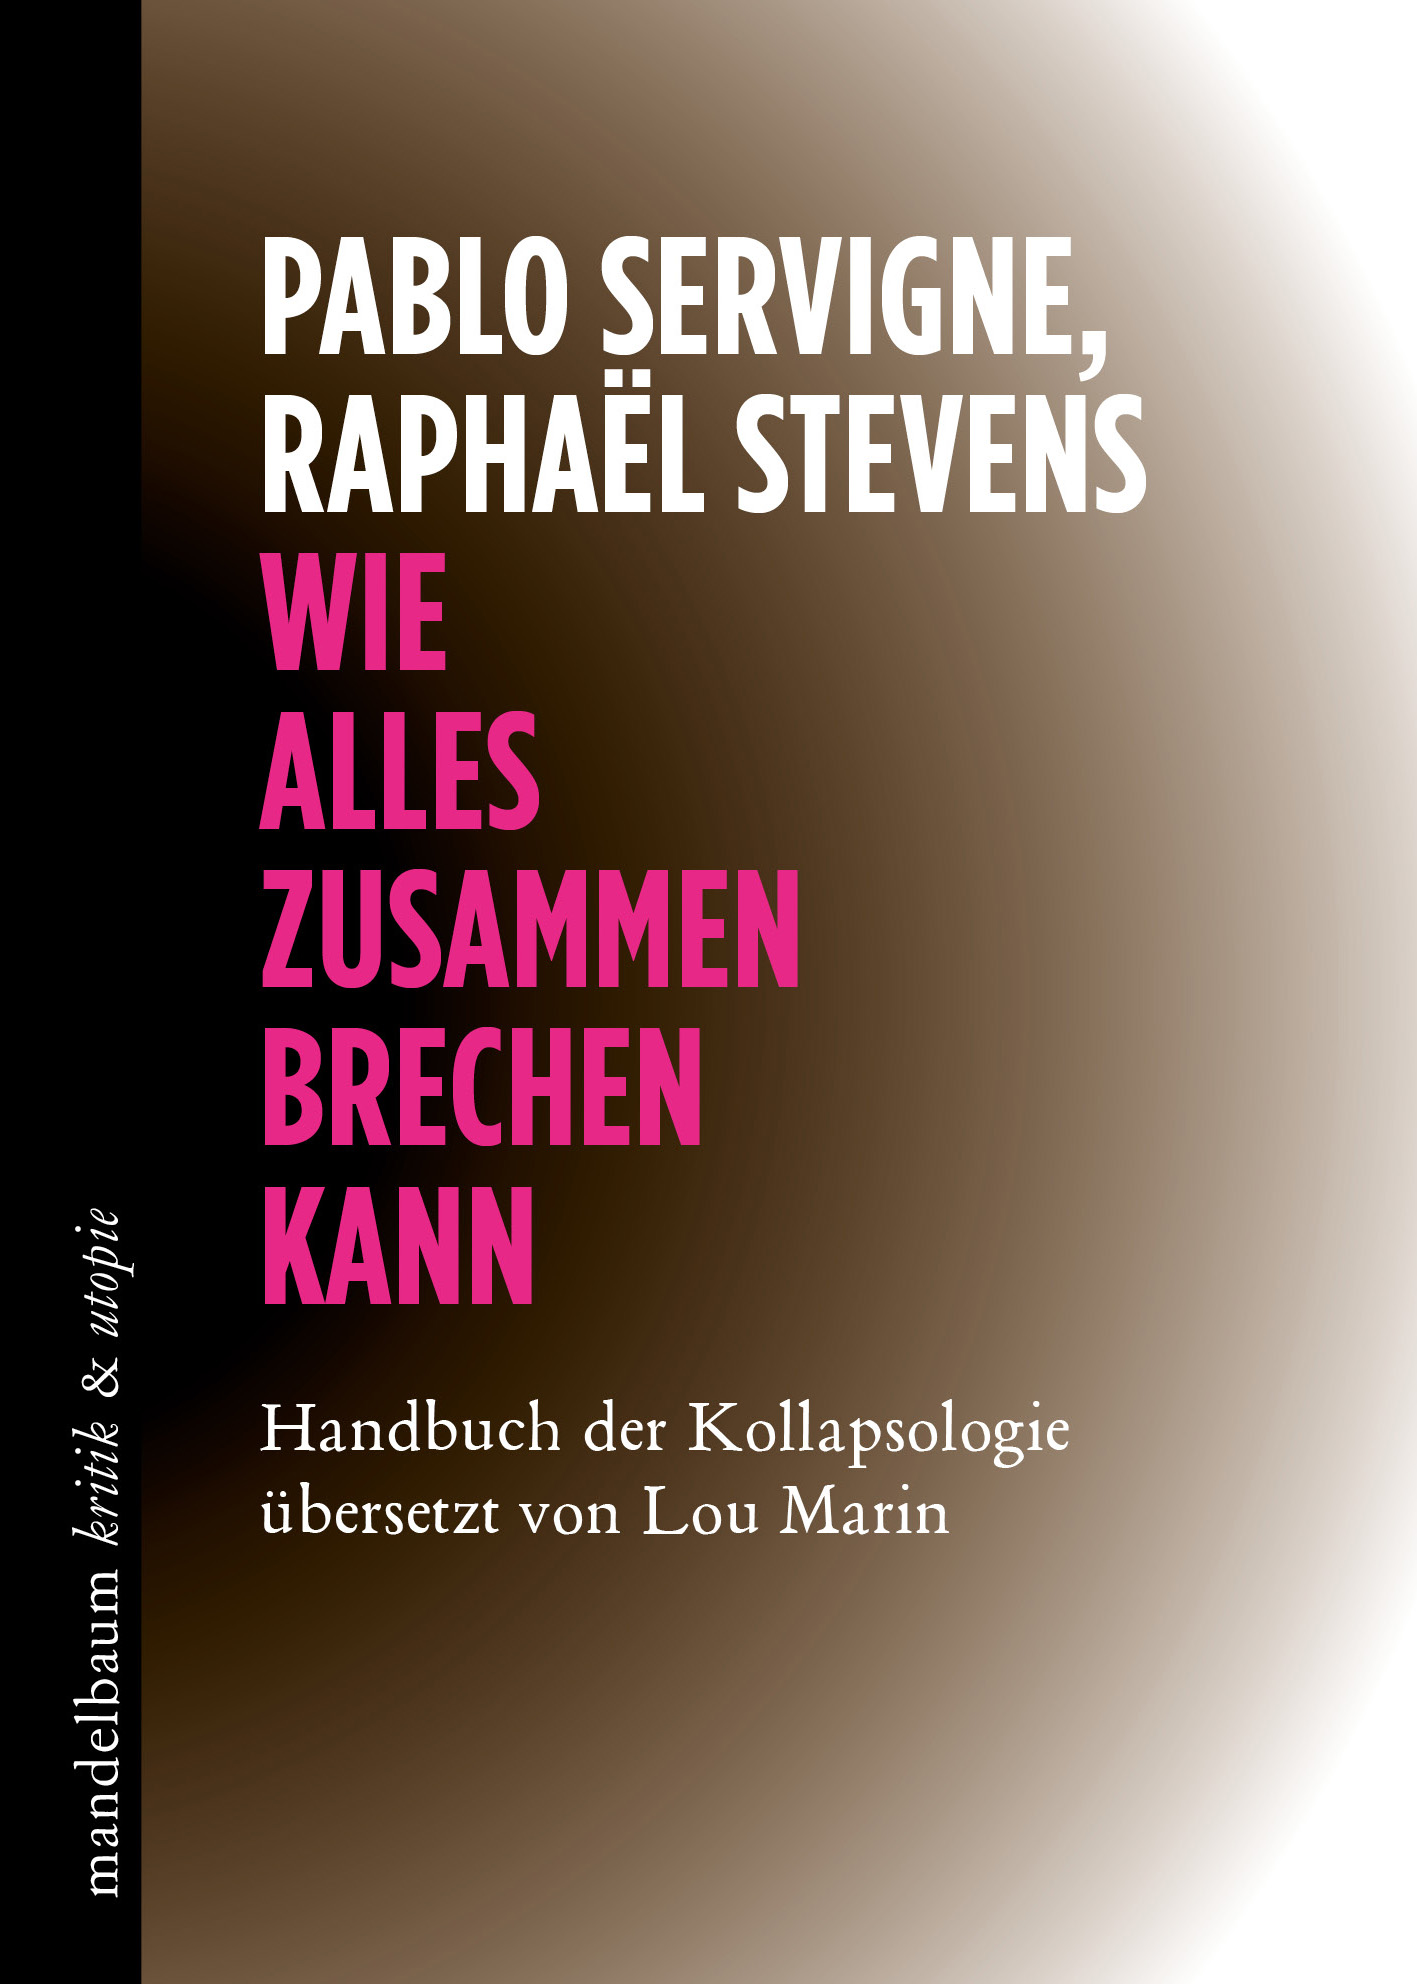 Pablo Servigne, Raphaël Stevens: "Wie alles zusammenbrechen kann. Handbuch der Kollapsologie"